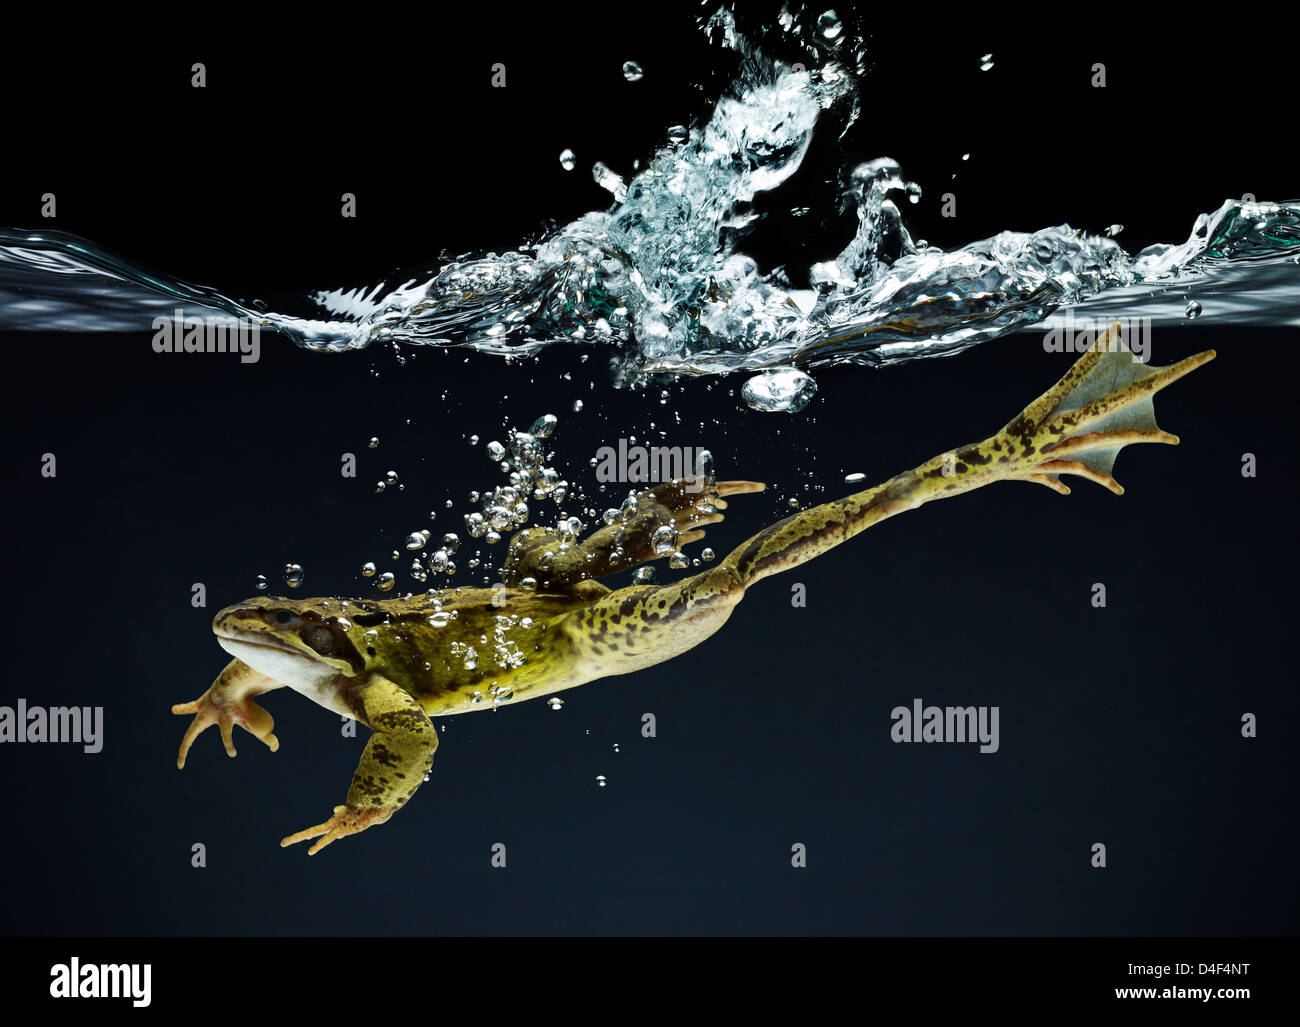 Frog swimming underwater Stock Photo